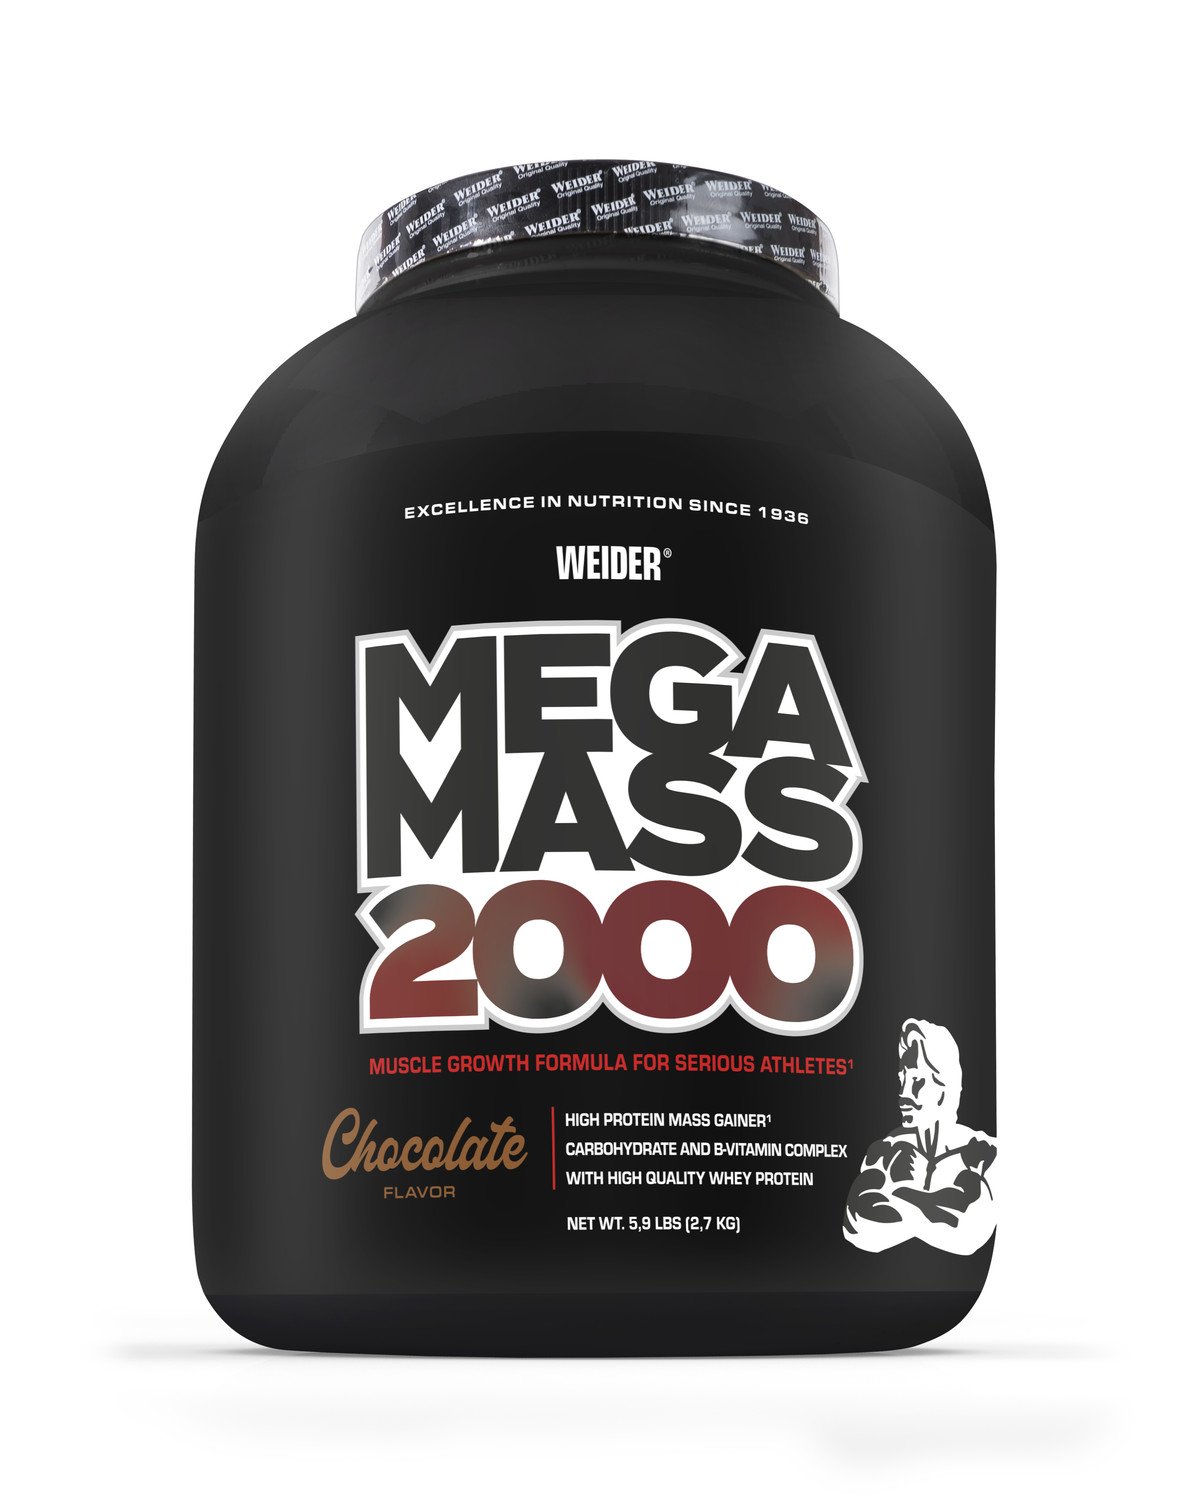 Weider Mega Mass 2000, 2700 g, sacharidovo-proteinový prášek, Chocolate